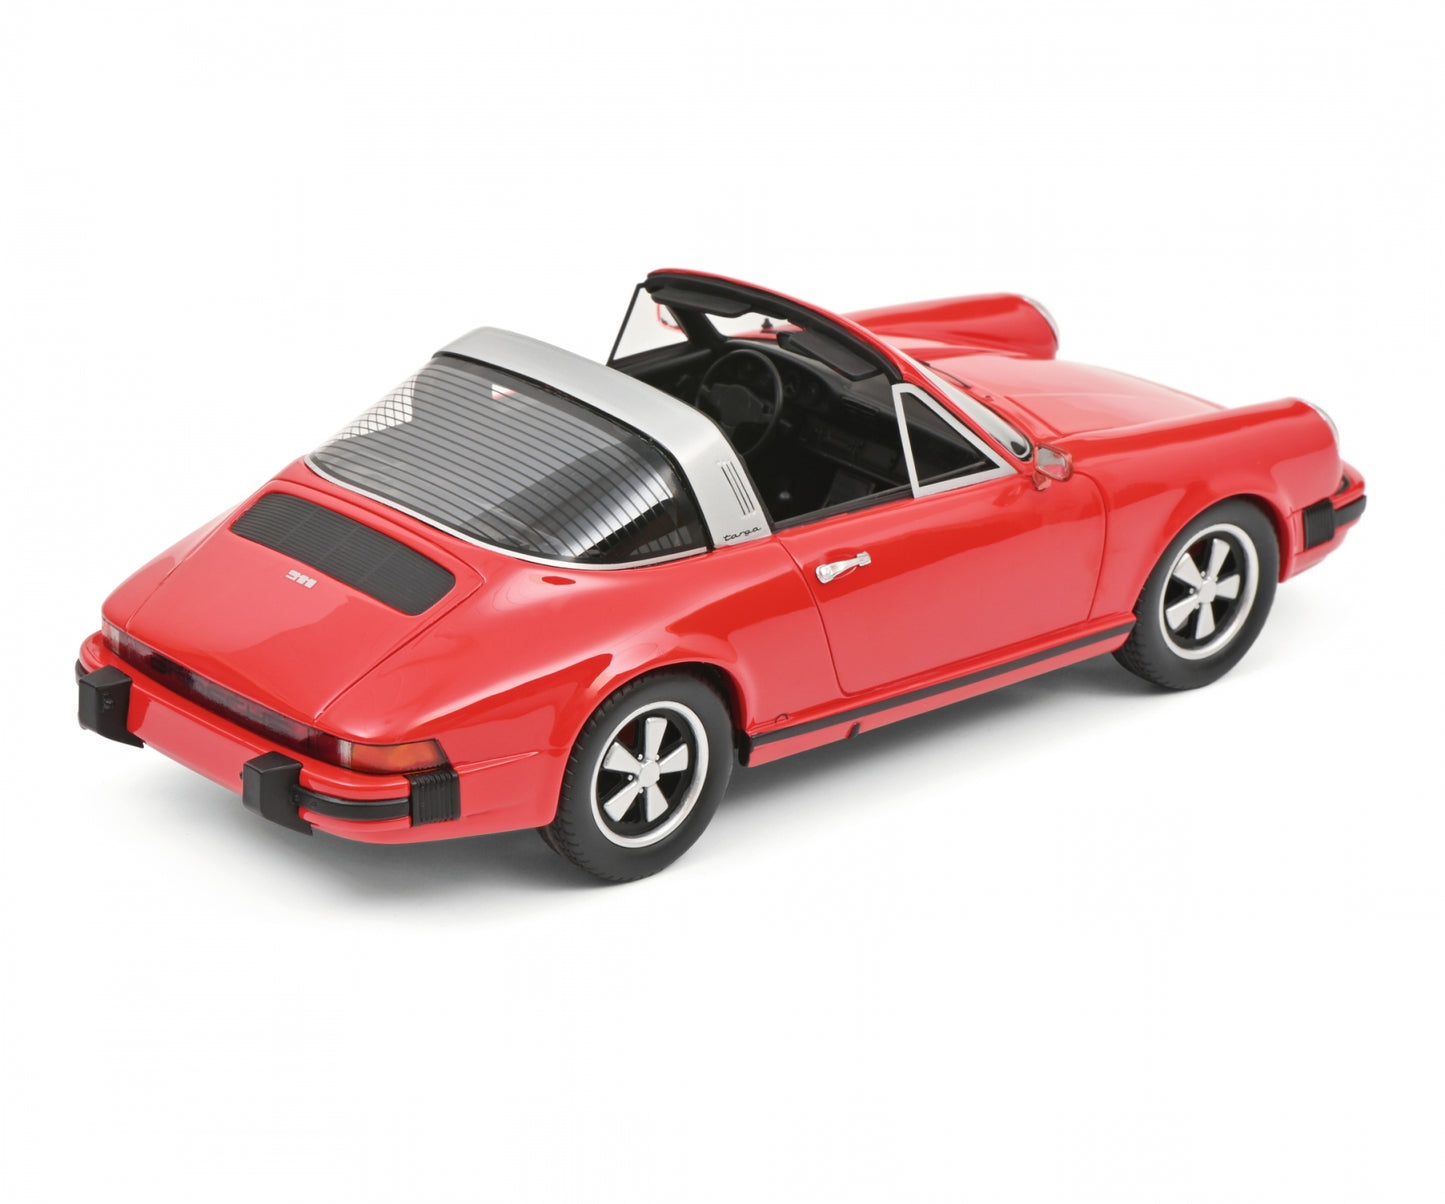 Schuco 1:18 Porsche 911 Targa 1977 Red 450048700